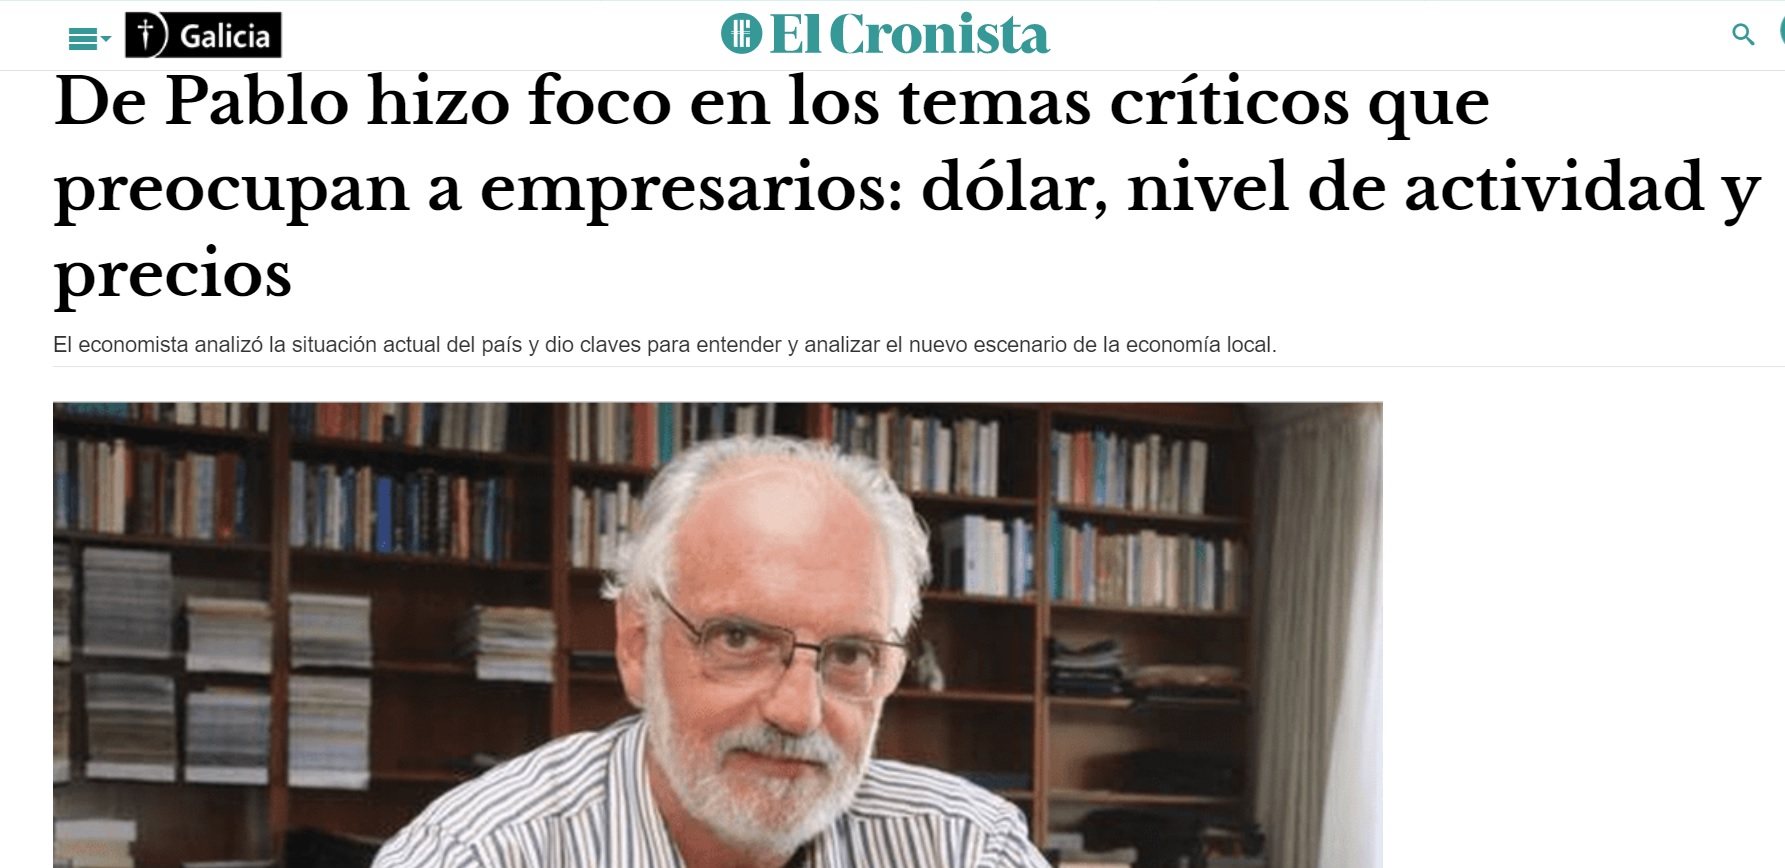 Nuestro Webinar con Juan Carlos de Pablo en El Cronista